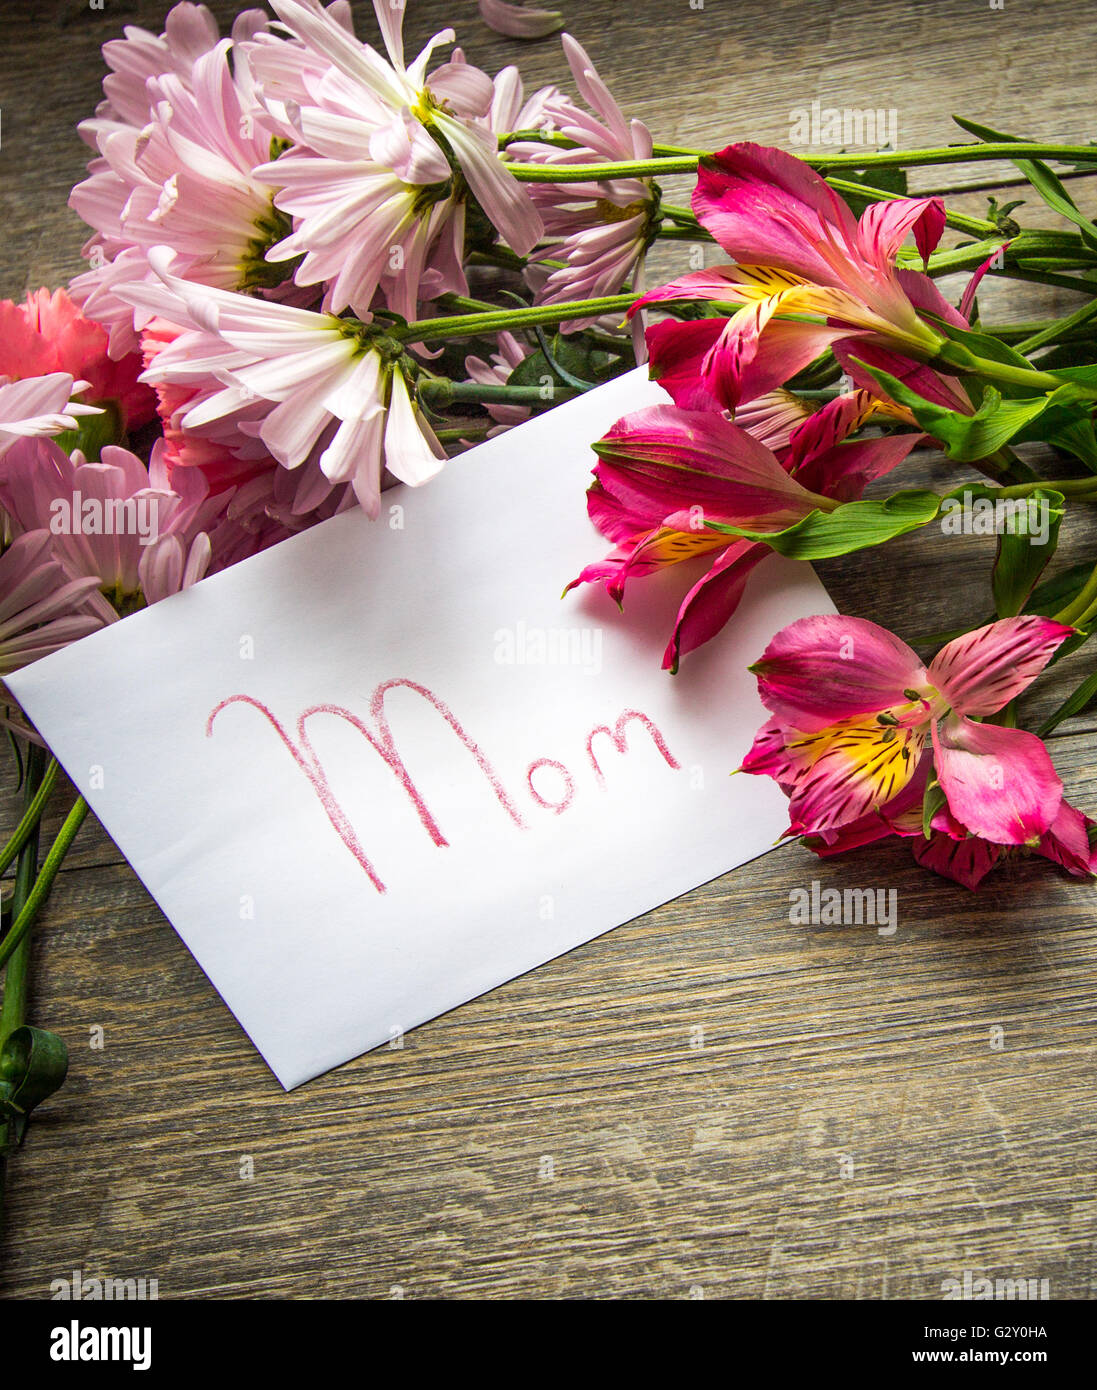 Feliz día de las madres. o tarjeta de felicitación para mamá con bouquet de flores cortadas frescas para el día de las madres. Foto de stock